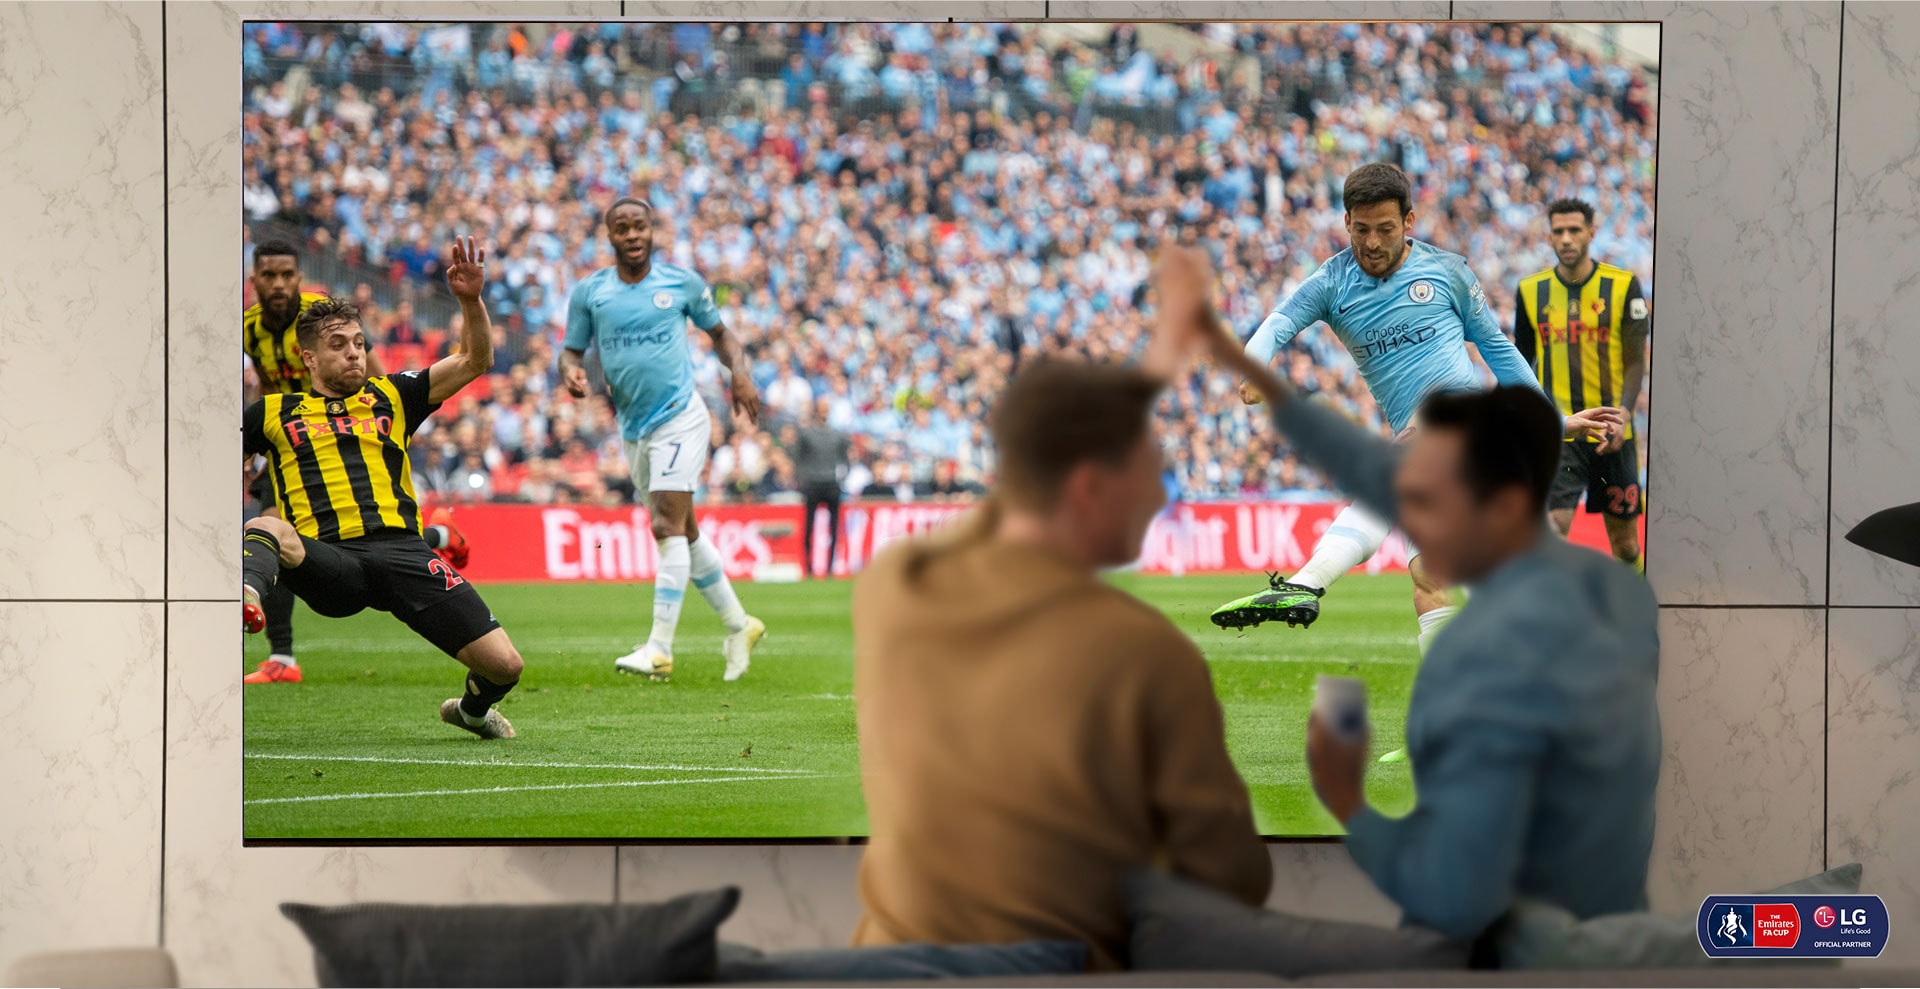 Dos hombres están animando mientras miran un partido de futbol en un NanoCell TV de un salón. Debajo de eso, se muestra la tecnología NanoCell para mejorar la calidad de imagen.